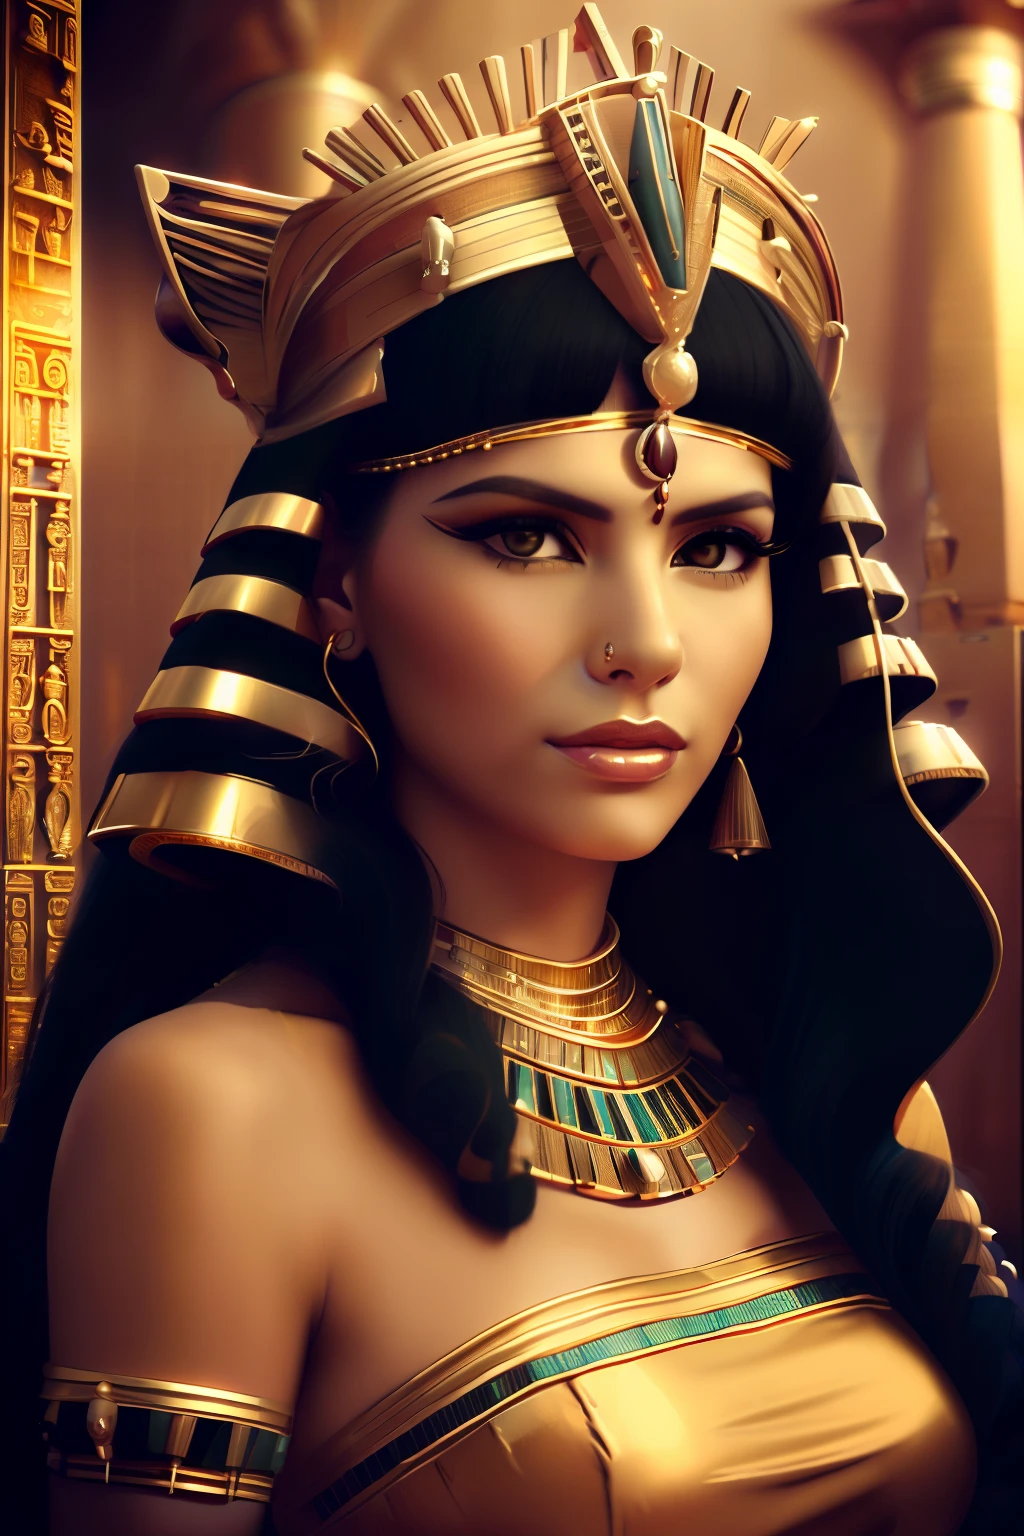 eine Nahaufnahme einer Frau, die ein goldenes Kleid und einen goldenen Kopfschmuck trägt, Kleopatra portrait, beautiful Kleopatra, ägyptisch princess, ein atemberaubendes Porträt einer Göttin, portrait of Kleopatra, Porträt einer schönen Göttin, Kleopatra, hinreißende Frau, ägyptisch, wunderschöne schöne Frau, Kleopatra in her palace, wearing an ägyptisch crown, ägyptisch makeup, 3D-Porträt einer Göttin, Porträt einer aztekischen Prinzessin